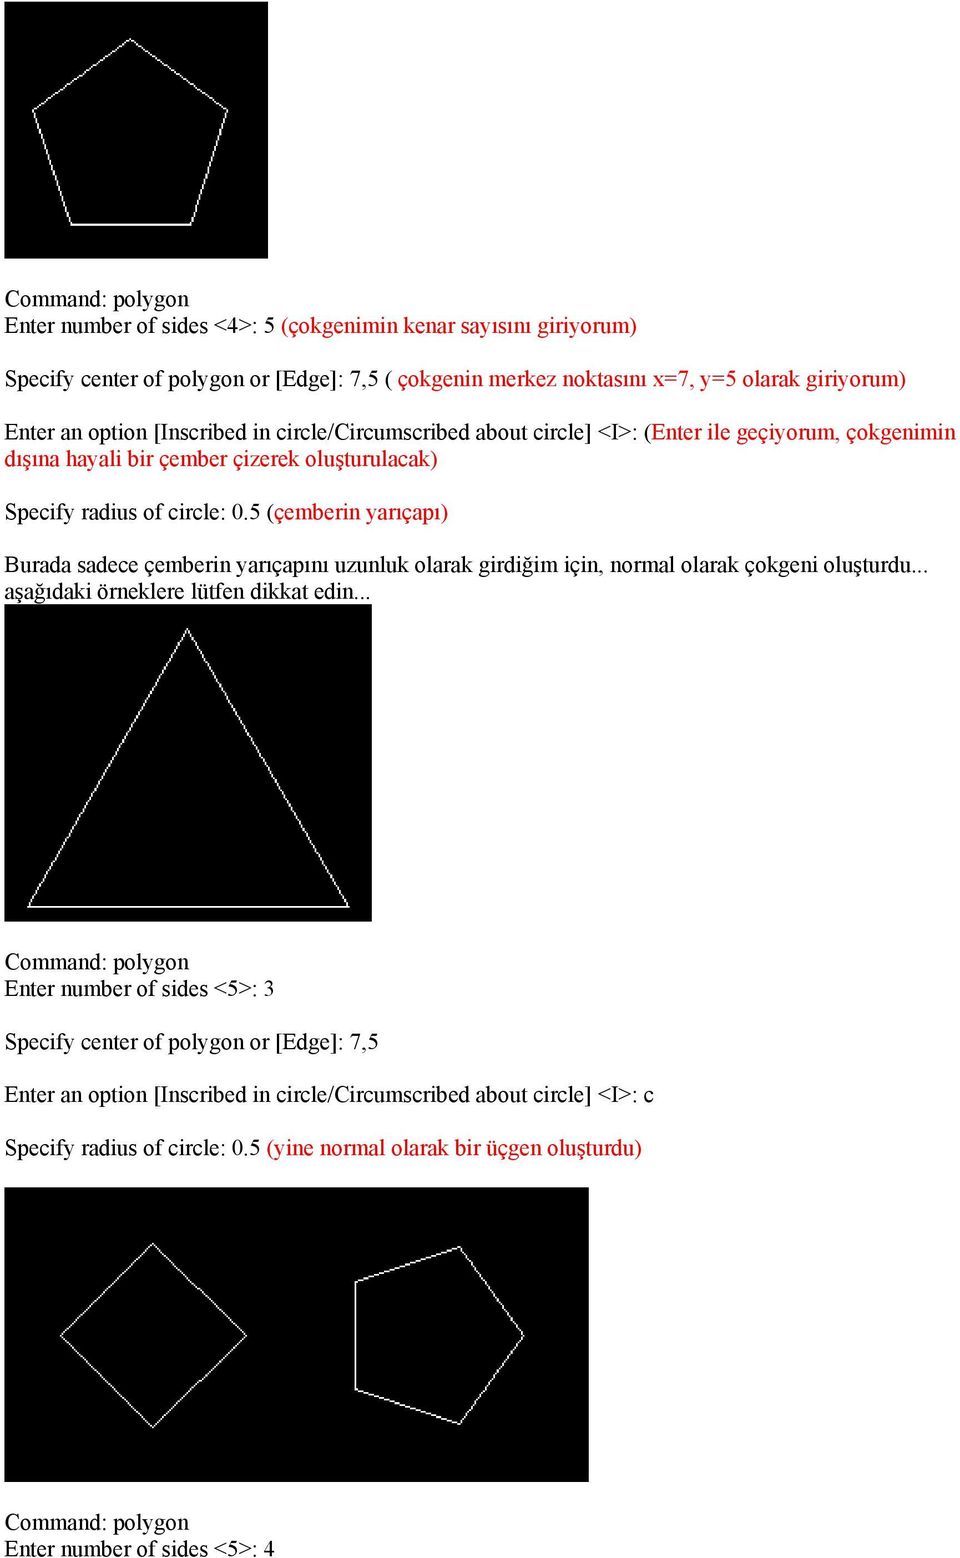 5 (çemberin yarıçapı) Burada sadece çemberin yarıçapını uzunluk olarak girdiğim için, normal olarak çokgeni oluşturdu... aşağıdaki örneklere lütfen dikkat edin.